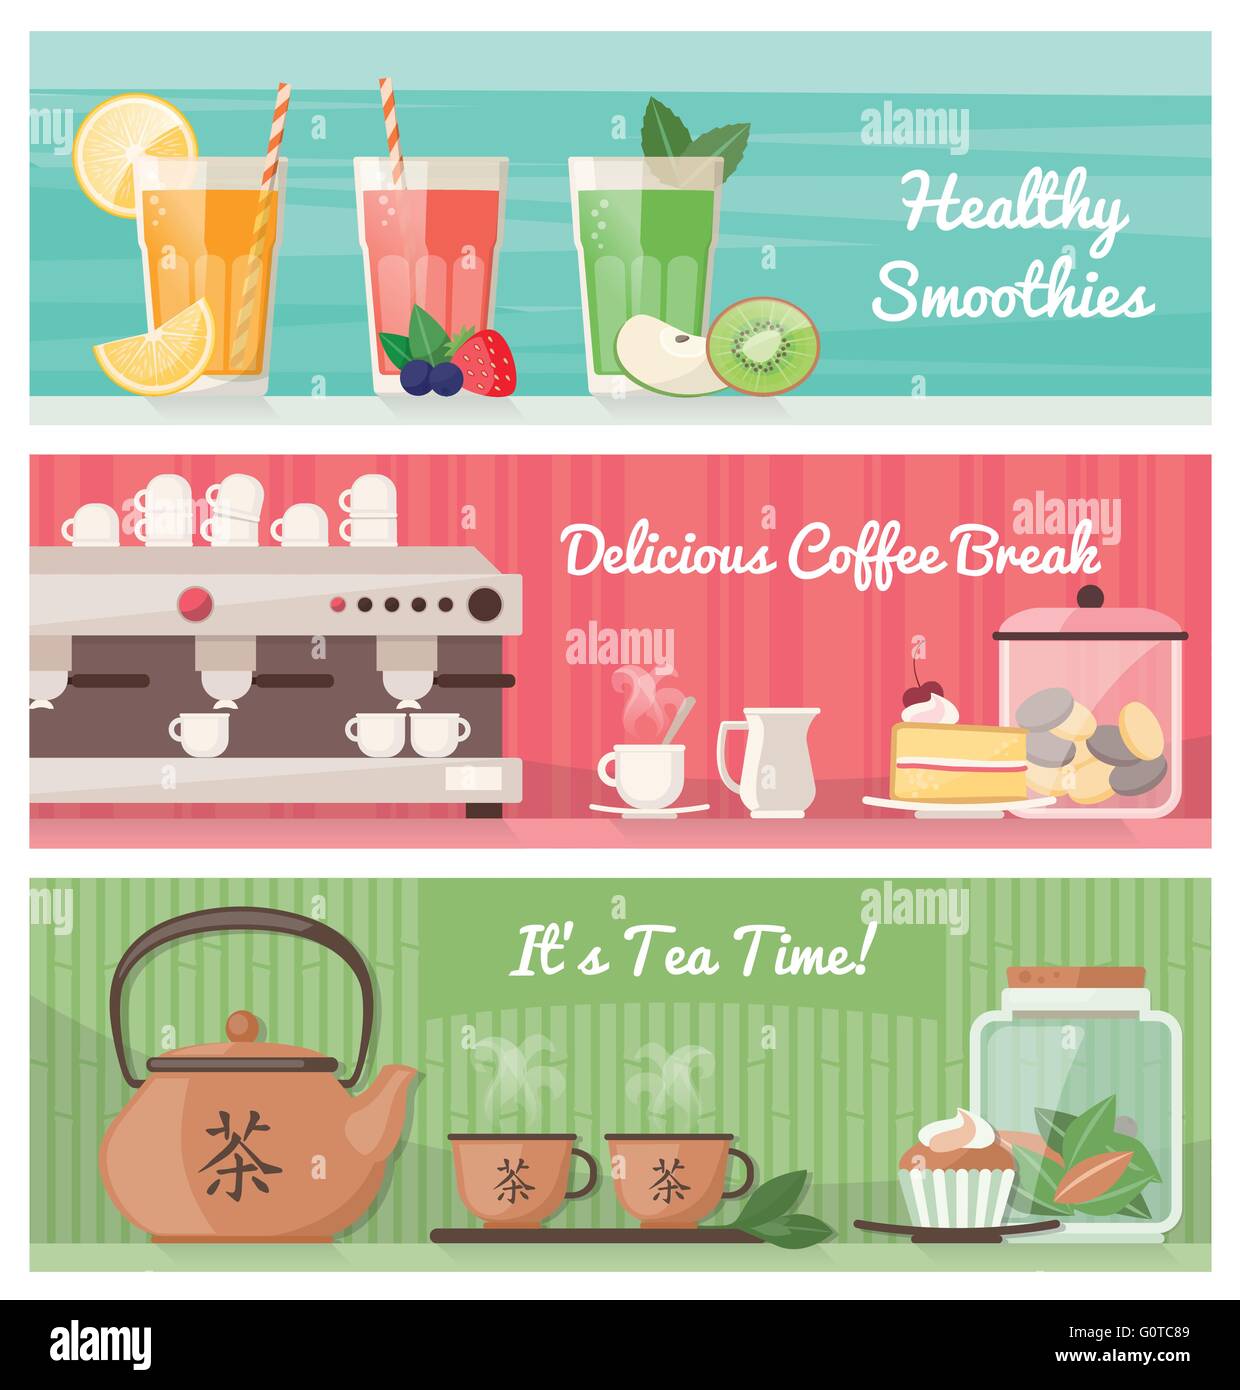 Smoothies, Kaffee und Tee, gesunde Getränke und leckere Snacks Banner set mit text Stock Vektor